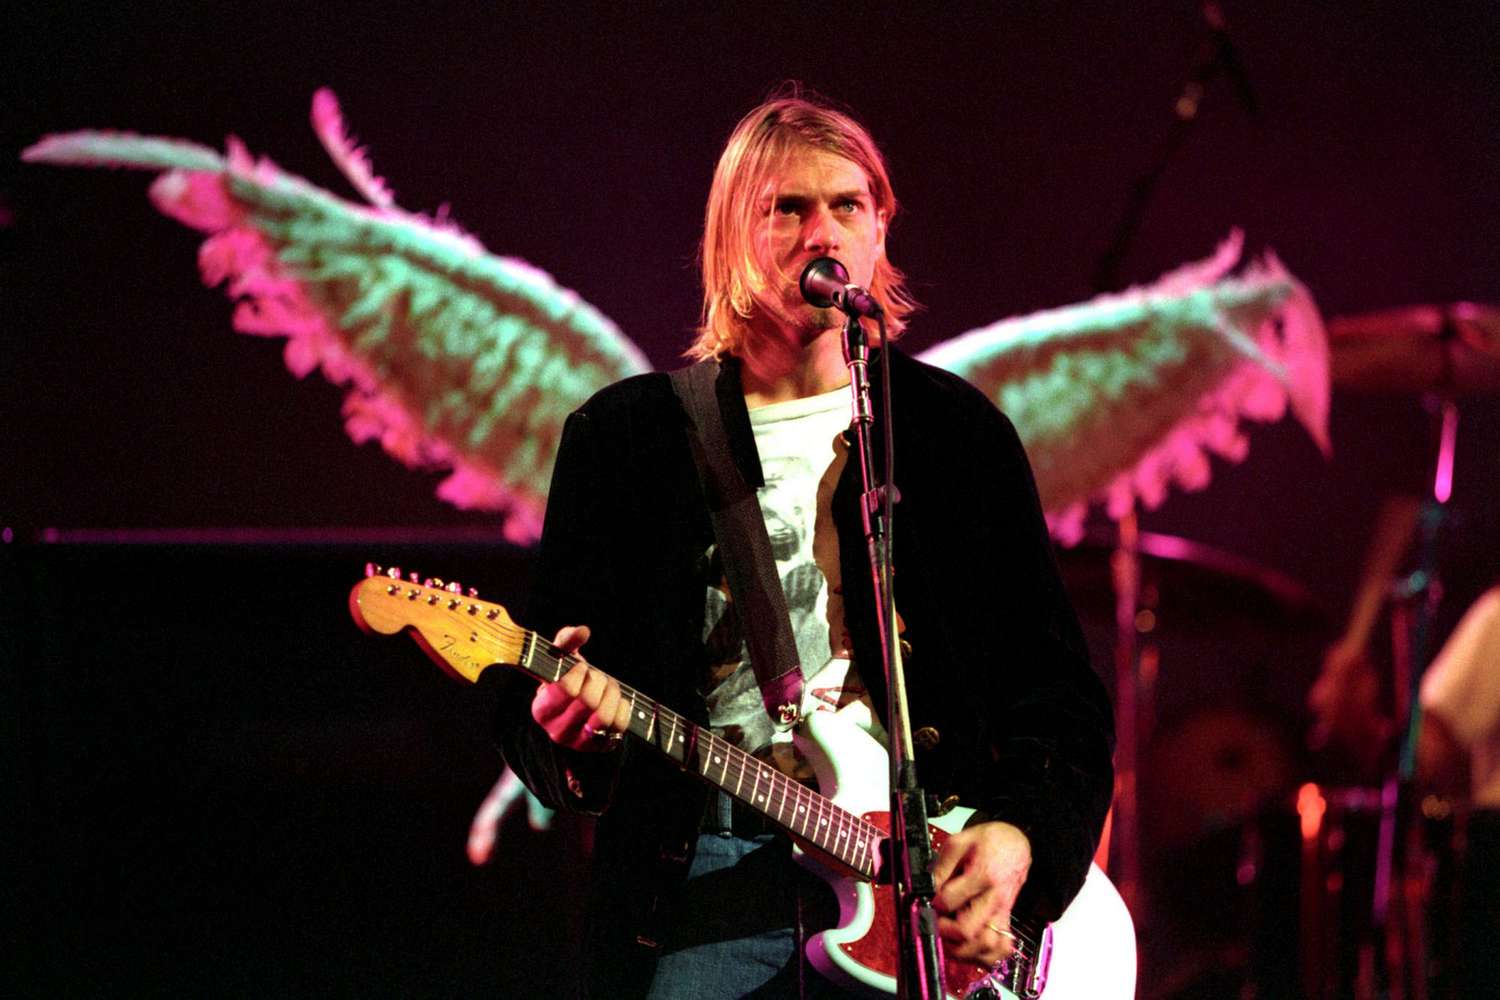 Kurt Cobain is not dead